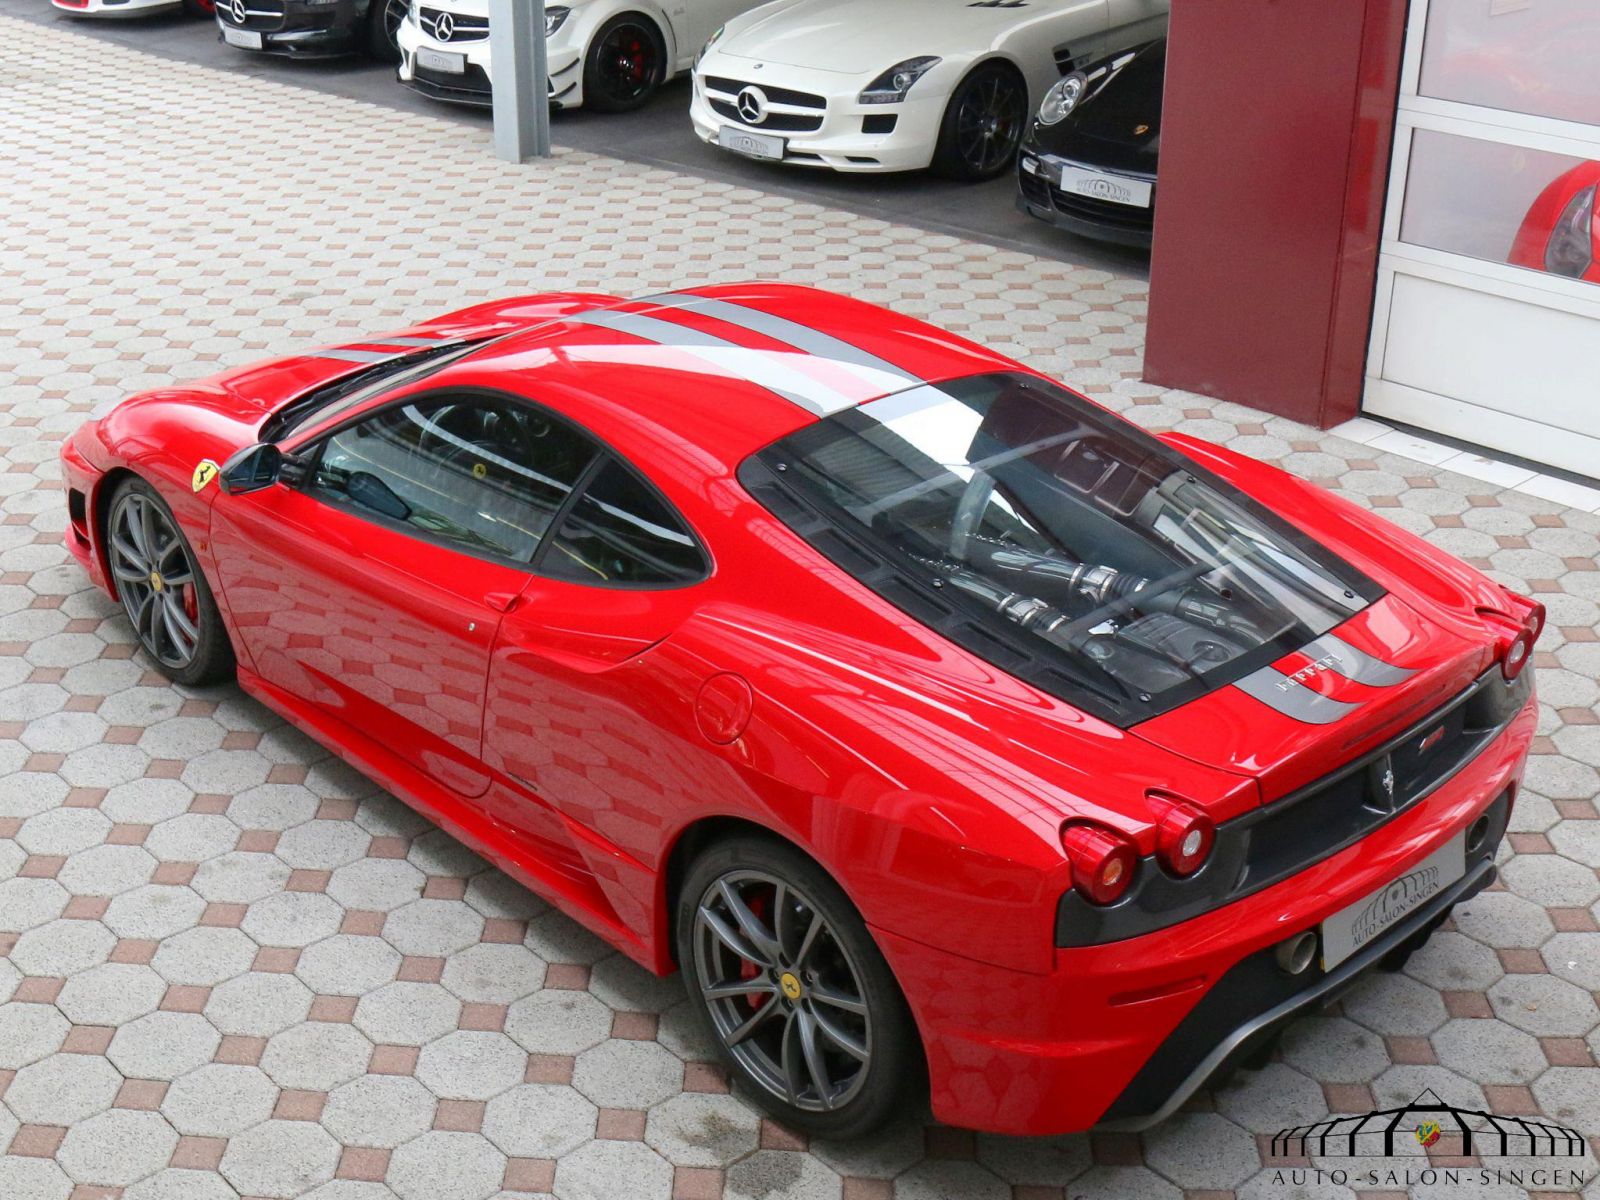 Ferrari F430 Scuderia Coupe Auto Salon Singen